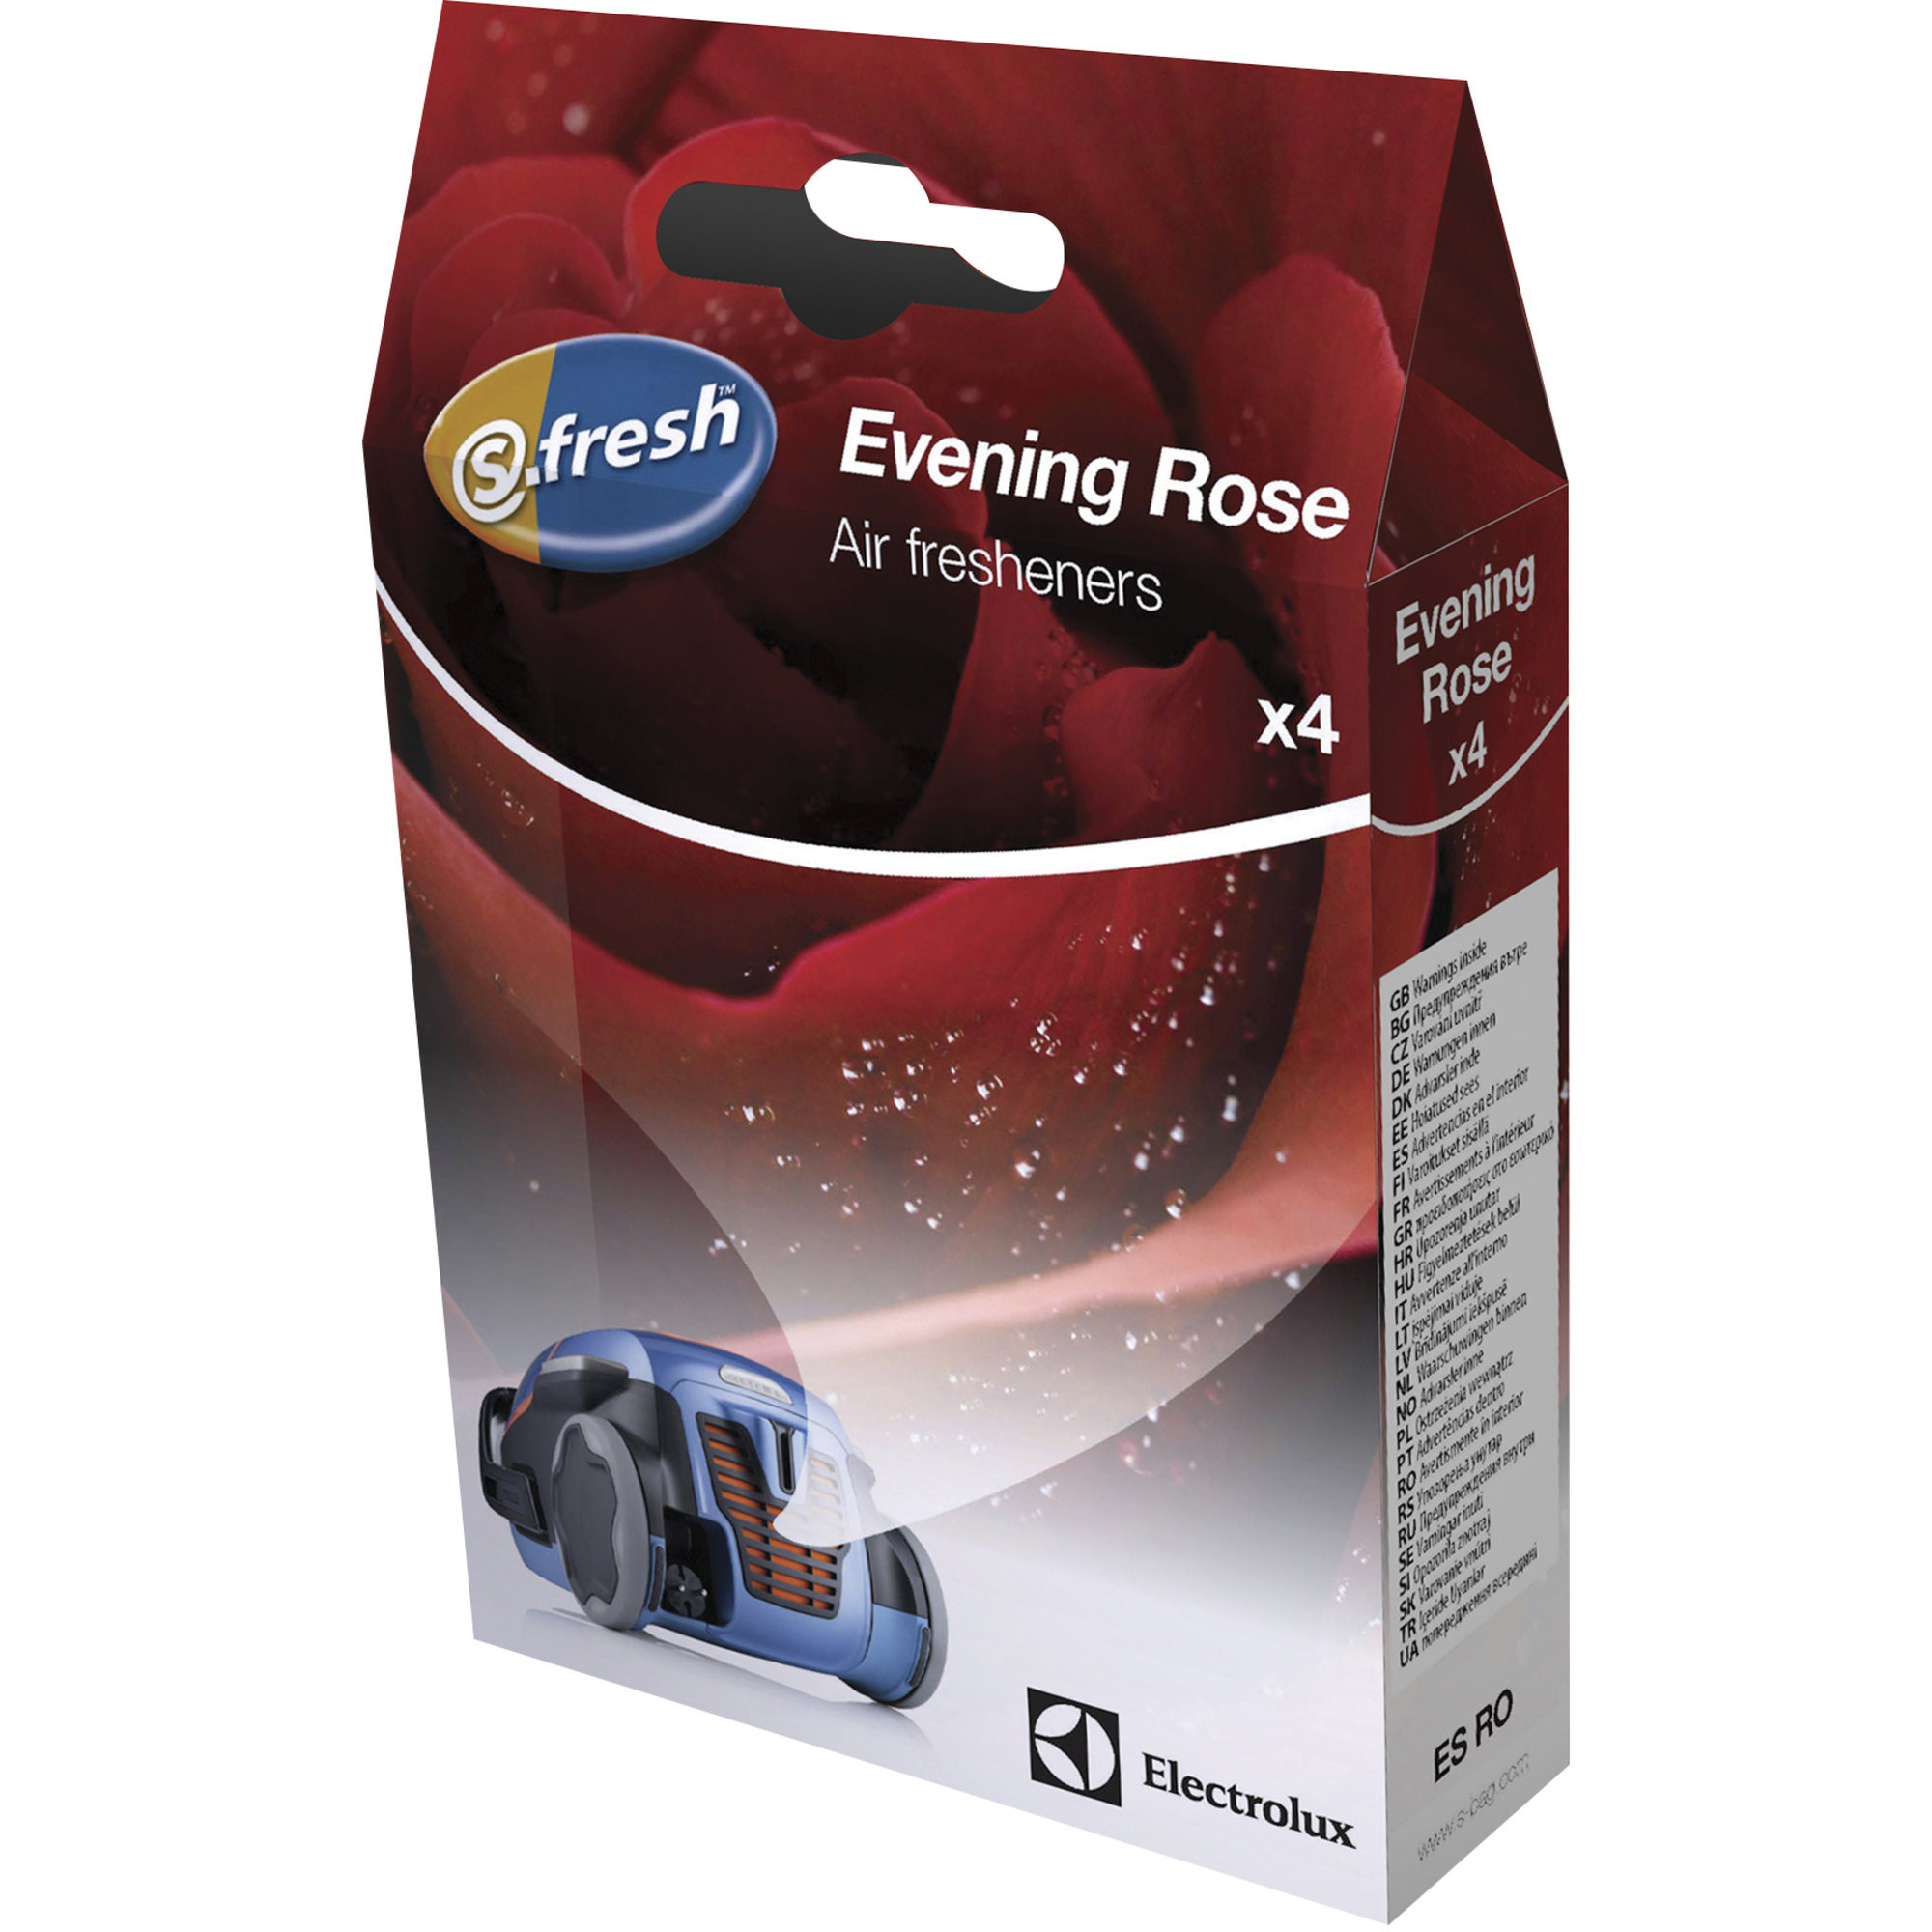 Electrolux S-fresh doftkulor till dammsugare – Evening Rose